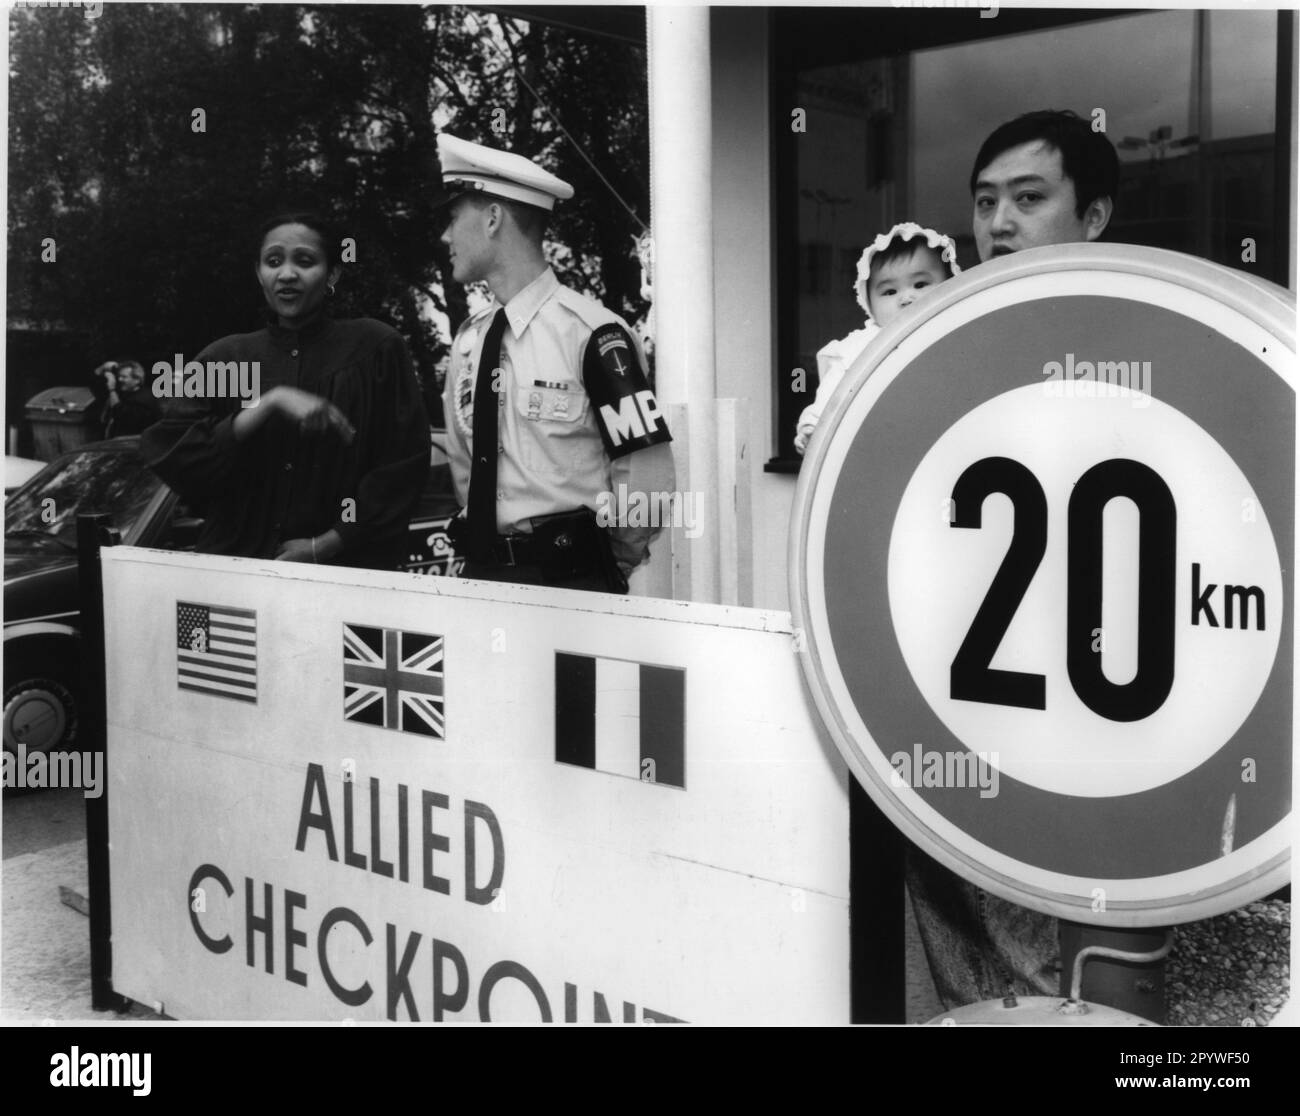 Berlin, Checkpoint Charlie, Friedrichstraße. Am 22. Juni 1990 wurde der Kontrollpunkt im Rahmen einer Gedenkfeier (Militärzeremonie) aufgelöst. Besucher neben einem amerikanischen Grenzschutz. Schwarz-Weiß. Foto, 06-22-1990. Stockfoto